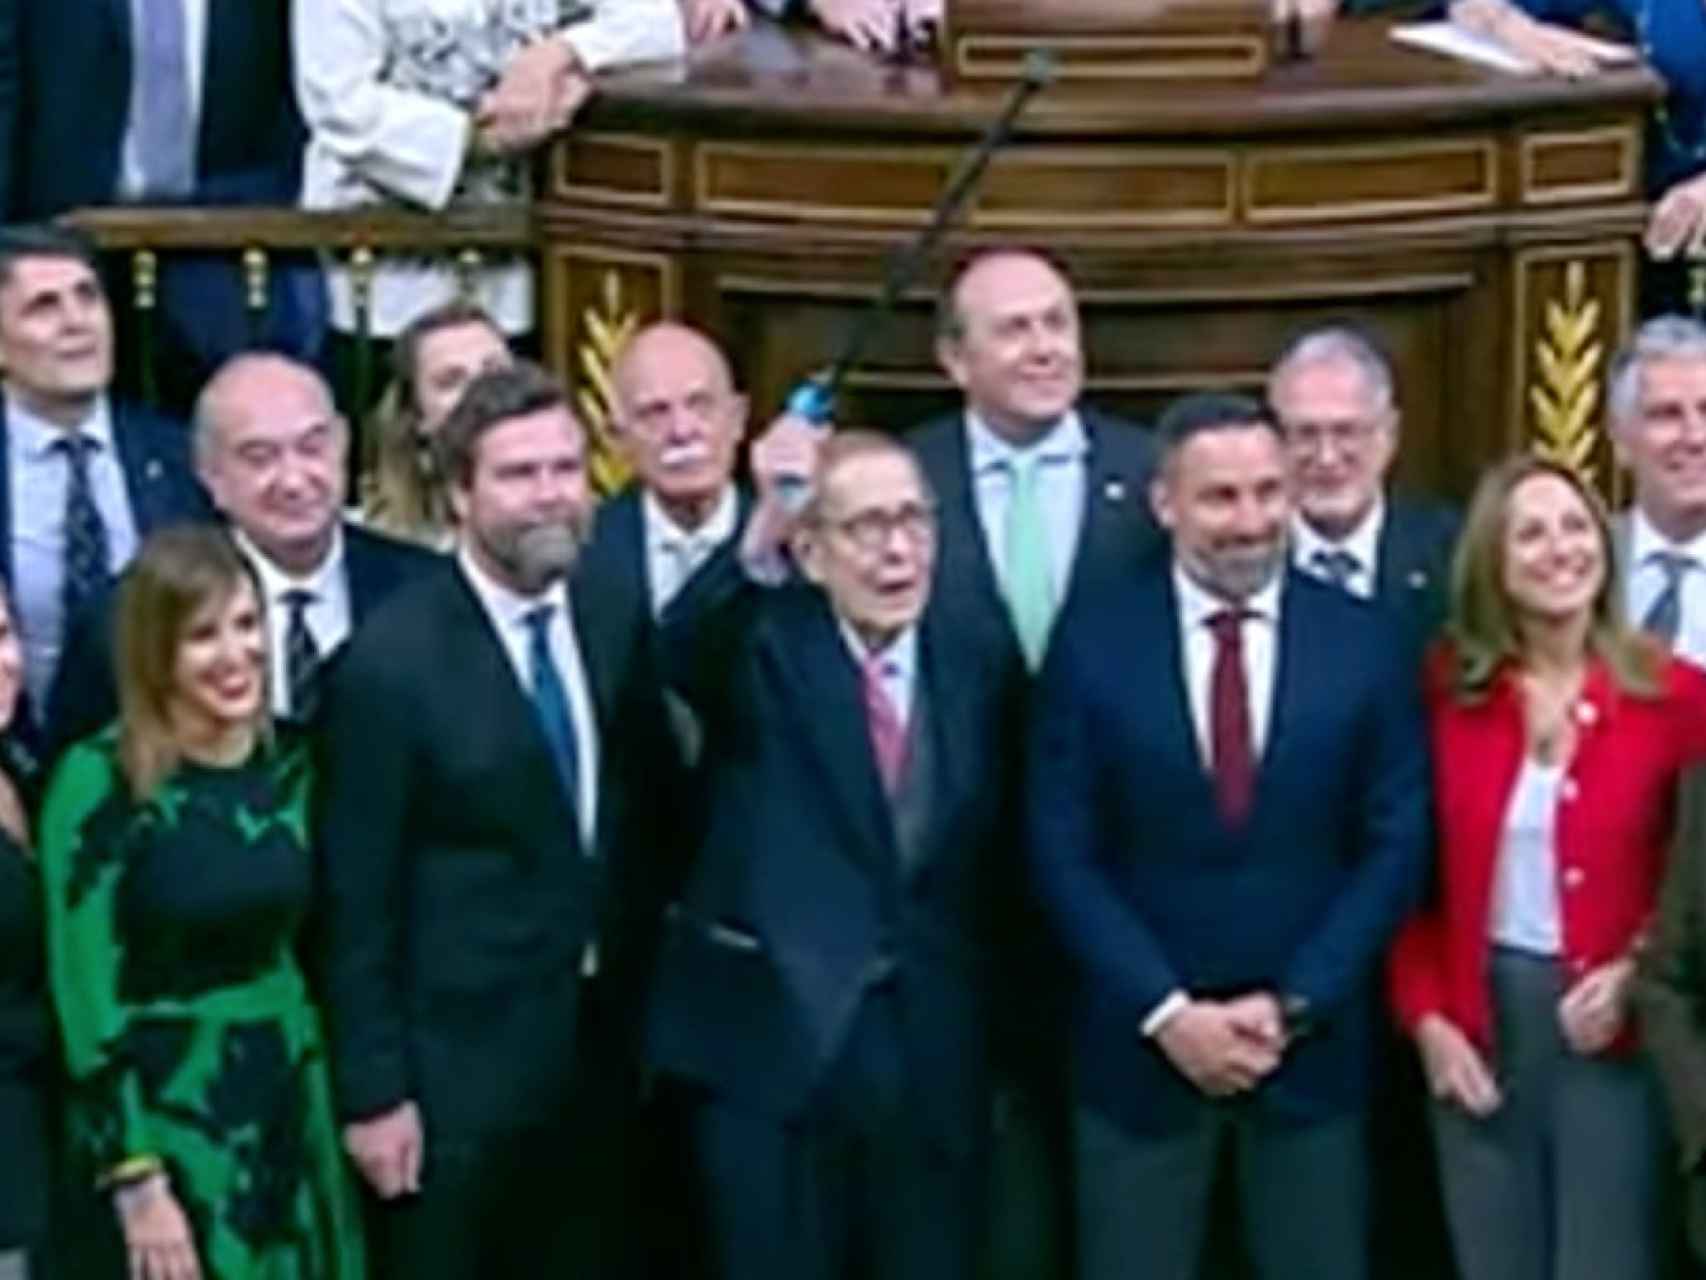 Tamames, en el centro alzando el bastón, escoltado por Espinosa de los Monteros y Abascal, y rodeado de otros diputados de Vox, ayer al término de la moción de censura en el Congreso.